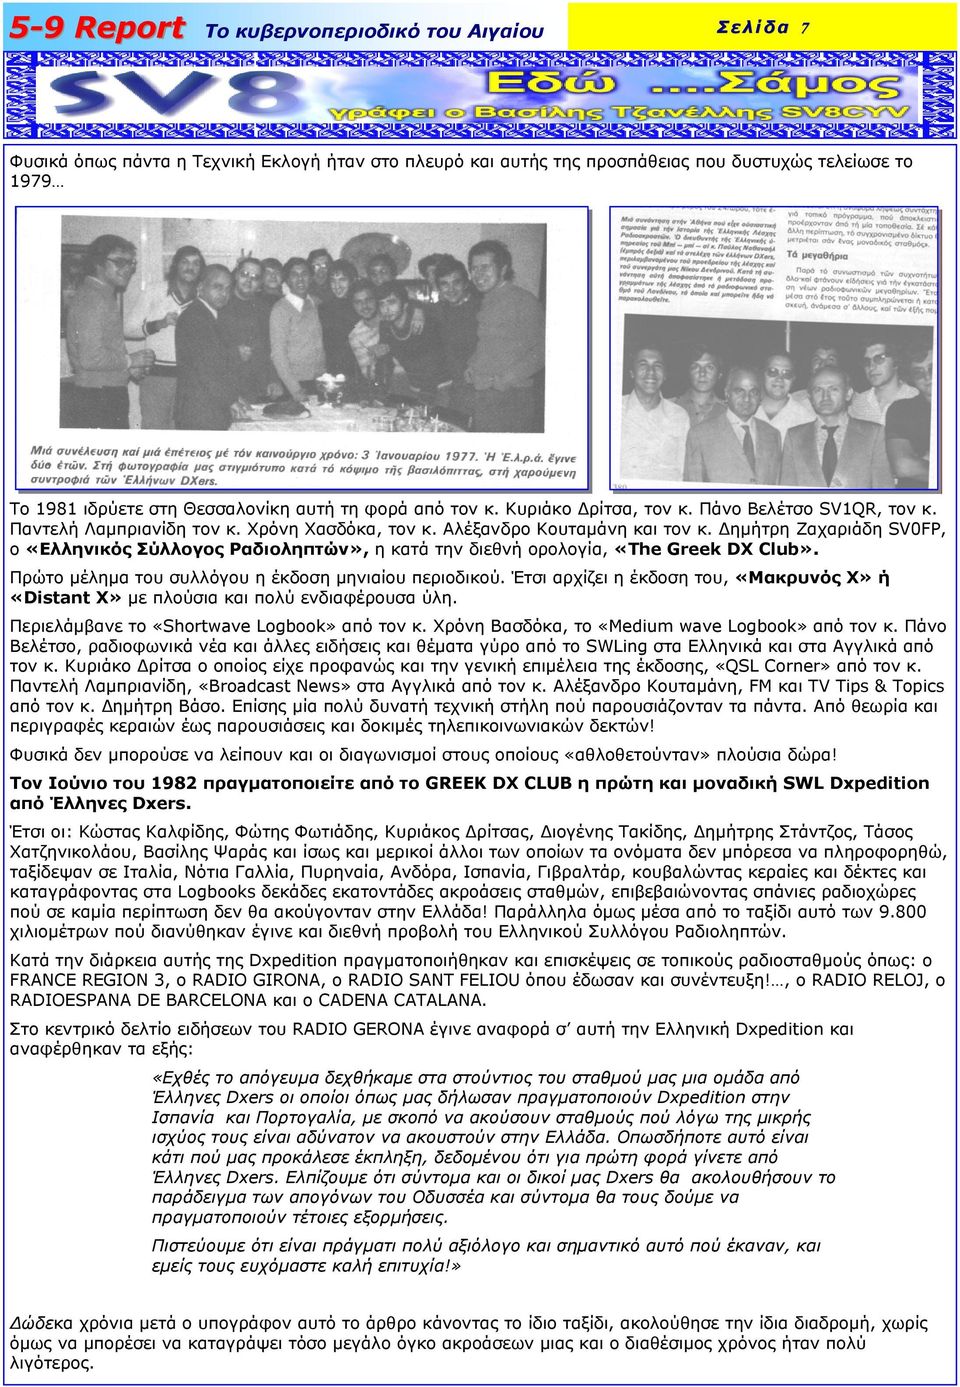 ηµήτρη Zαχαριάδη SV0FP, ο «Ελληνικός Σύλλογος Ραδιοληπτών», η κατά την διεθνή ορολογία, «The Greek DX Club». Πρώτο µέληµα του συλλόγου η έκδοση µηνιαίου περιοδικού.